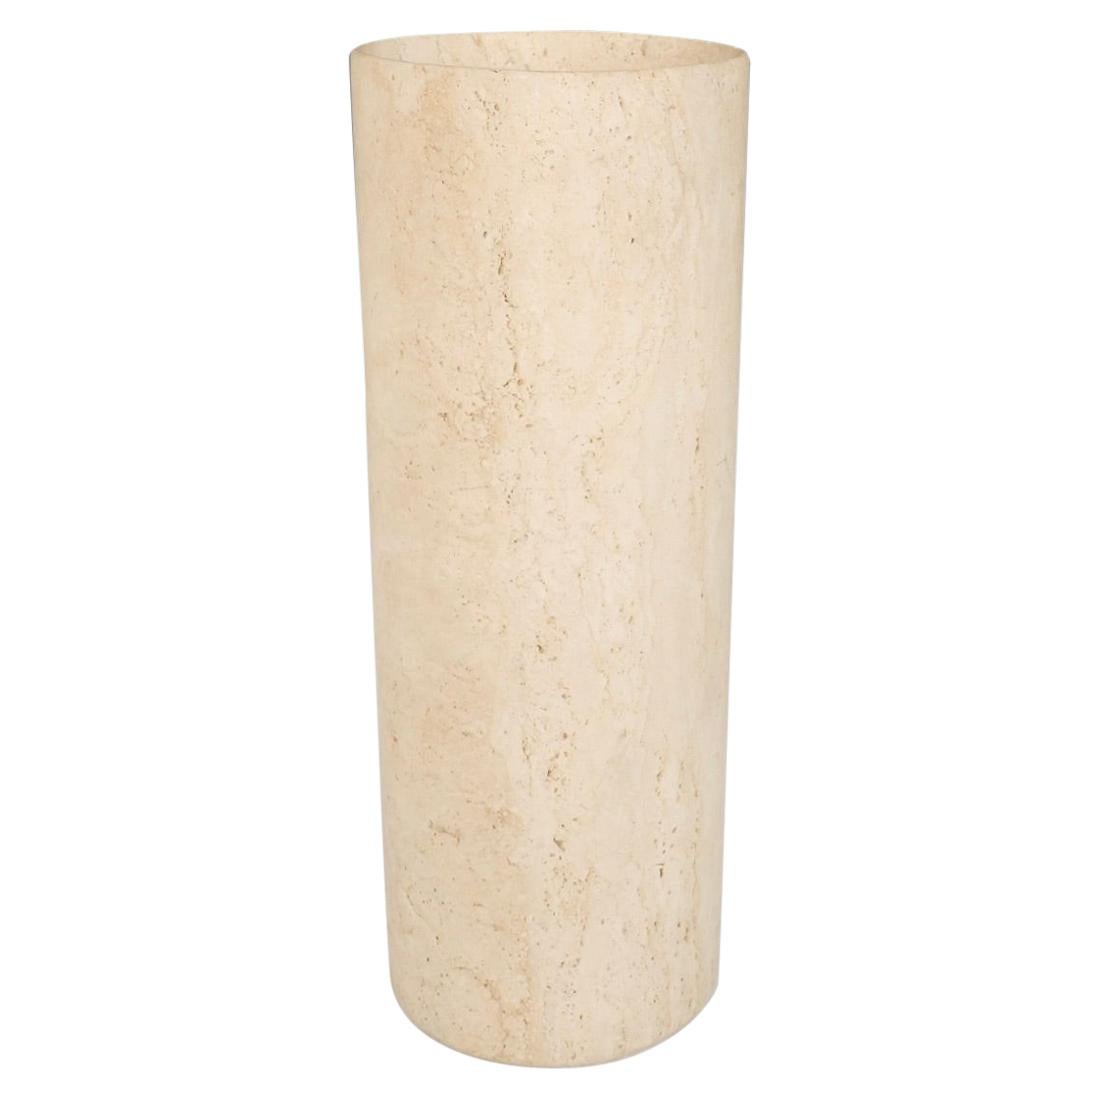 Travertine Marble Cylinder Floor Vase or Planter Pot